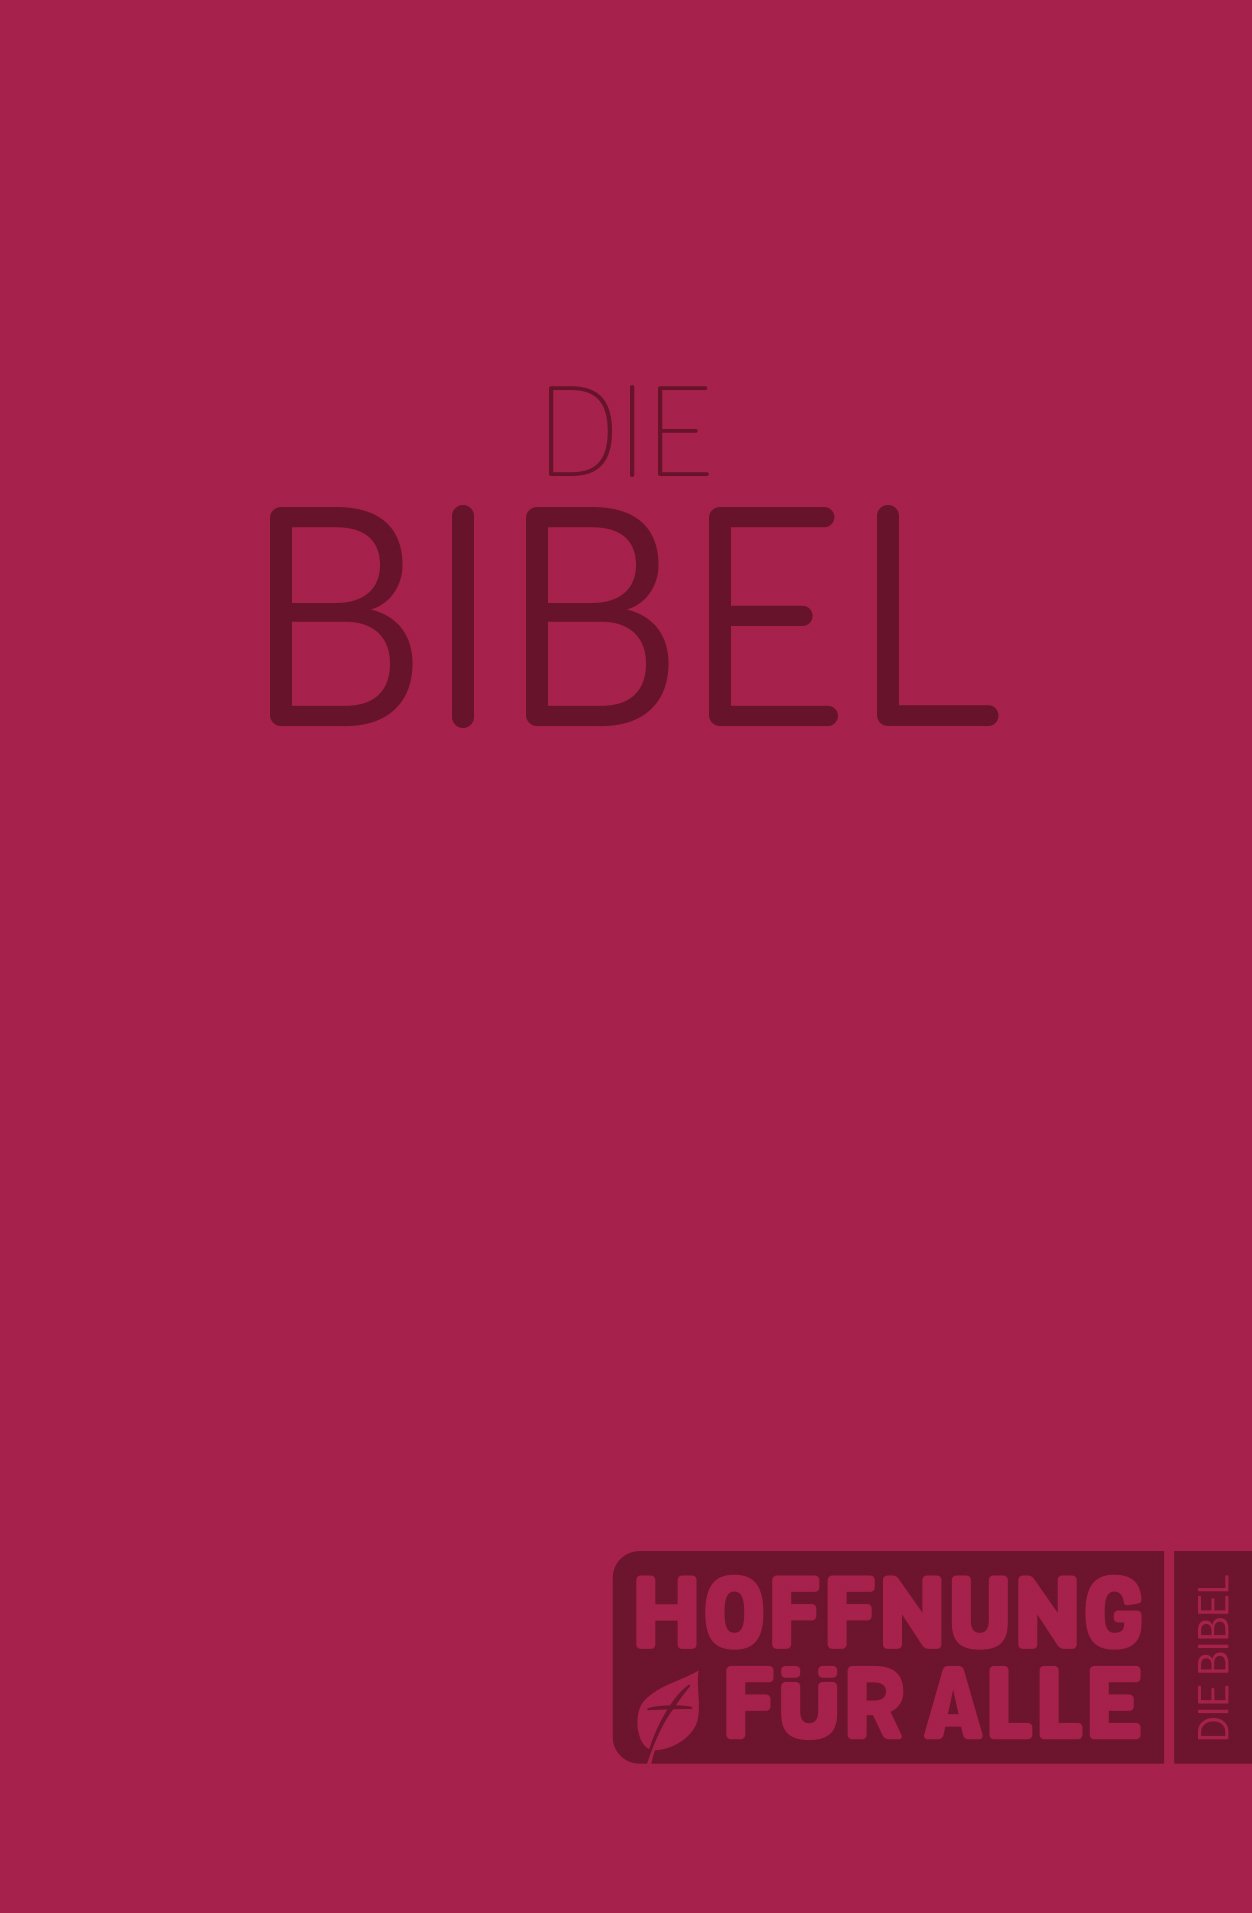 Hoffnung für alle 2015 - Die Bibel - Softcover-Edition Rot